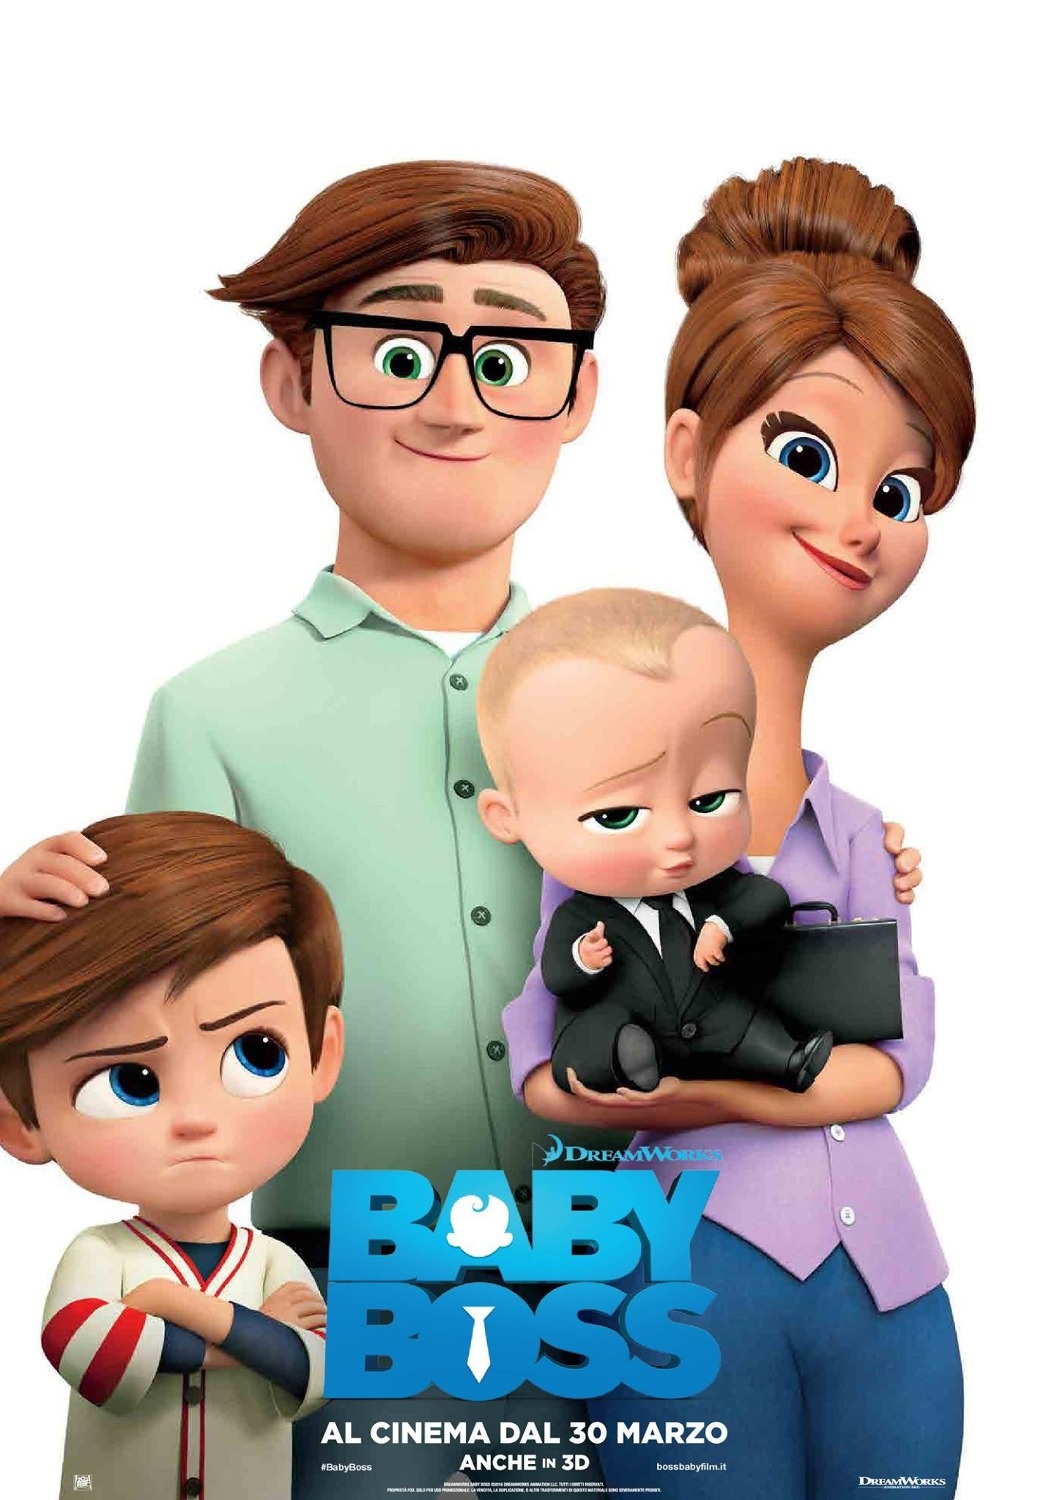 دانلود انیمیشن بچه رئیس The Boss Baby 2017